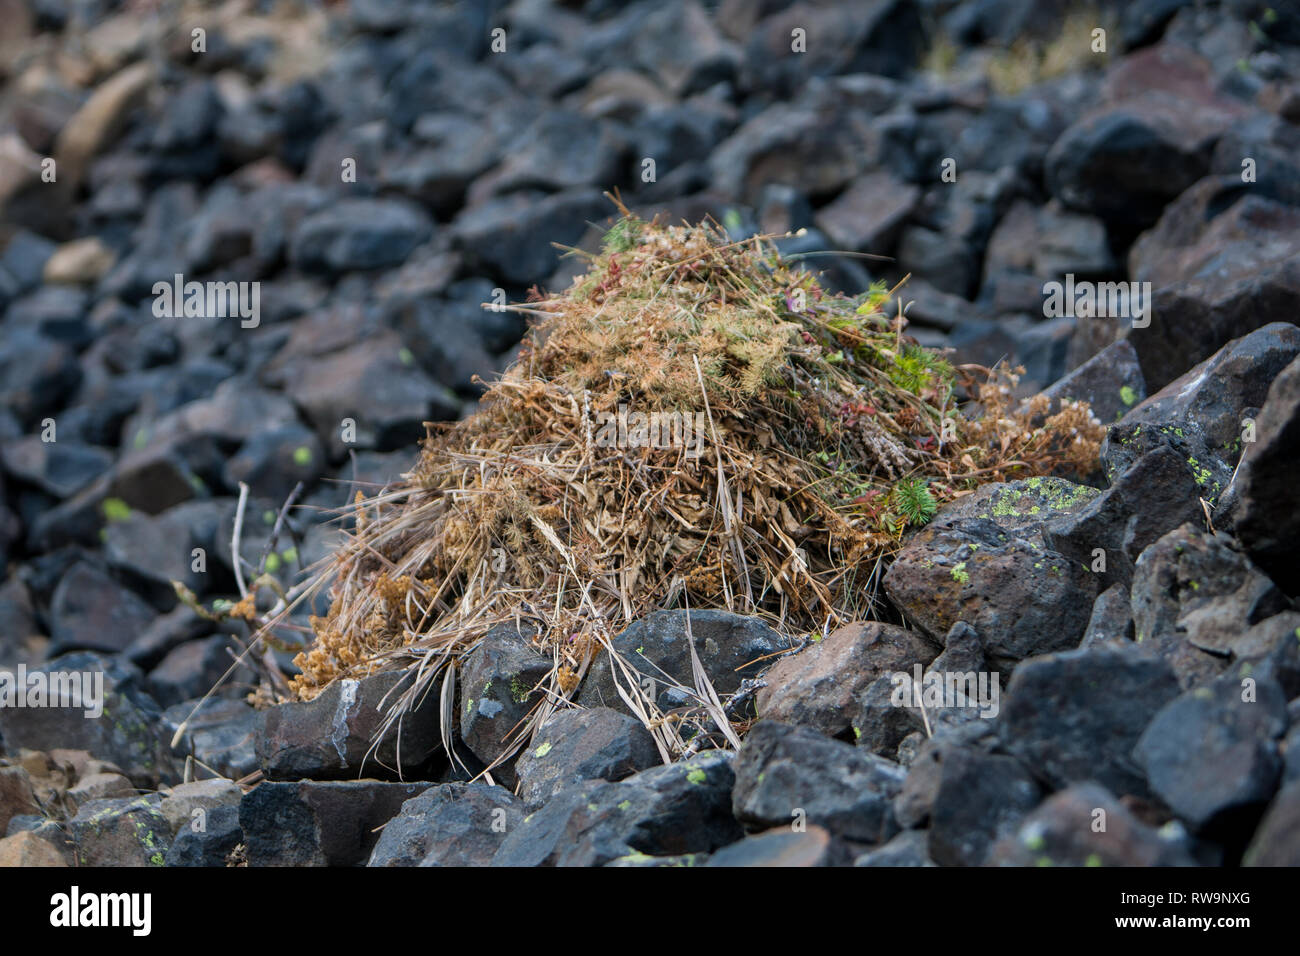 Diminutivo Pika raccogliere vegetazione, la pila a secco e poi prendere in nelle loro tane di memorizzare per consumo d'inverno. Foto Stock